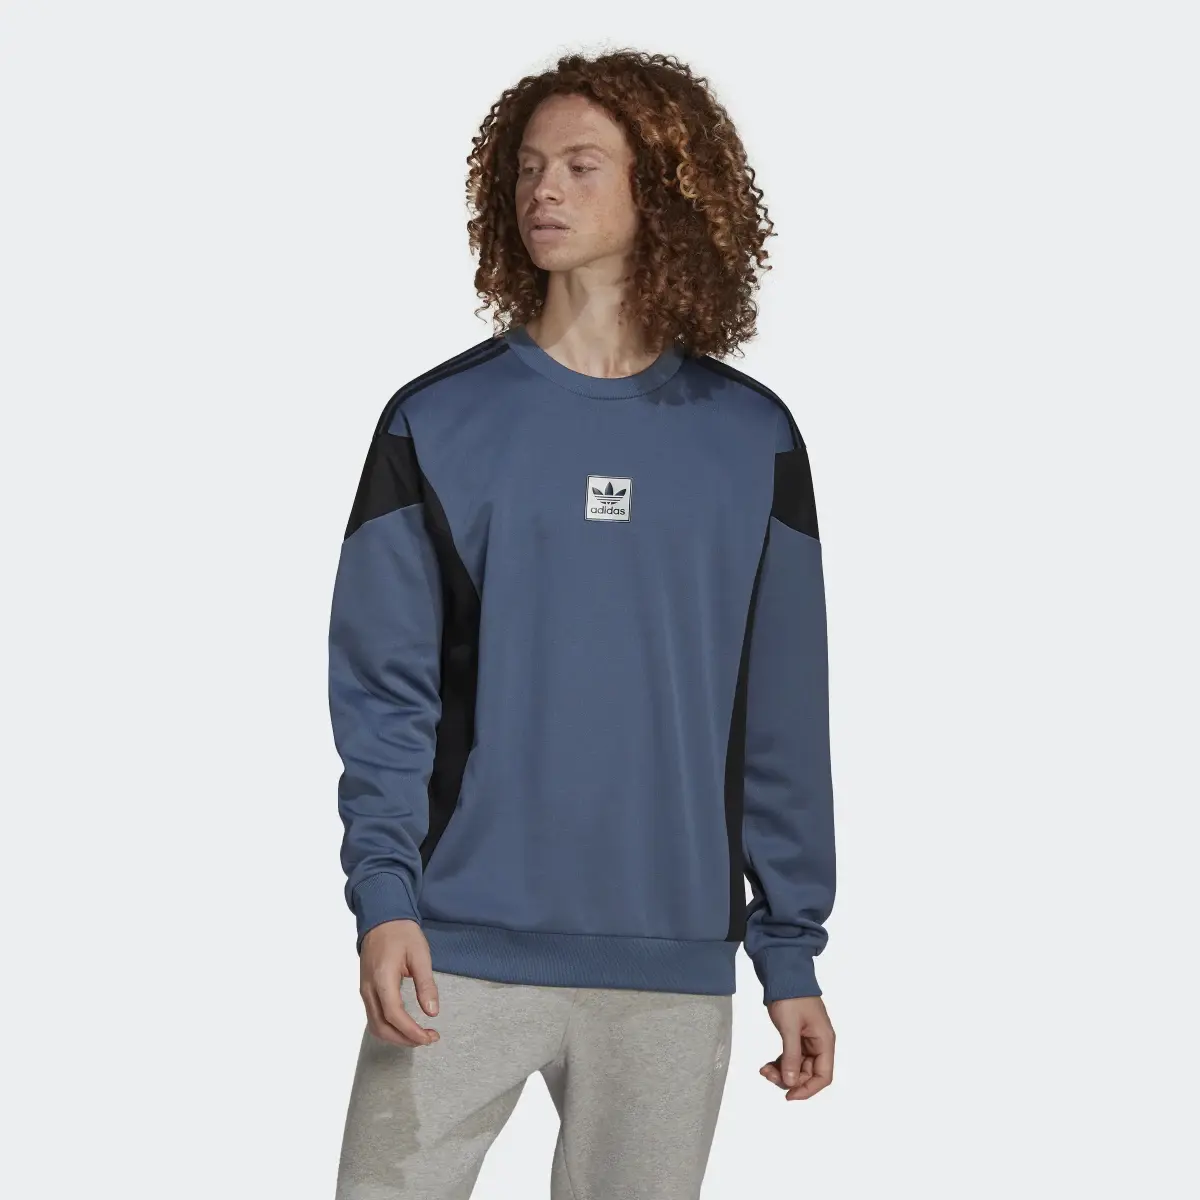 Adidas ID96 22 Crew Sweatshirt. 2